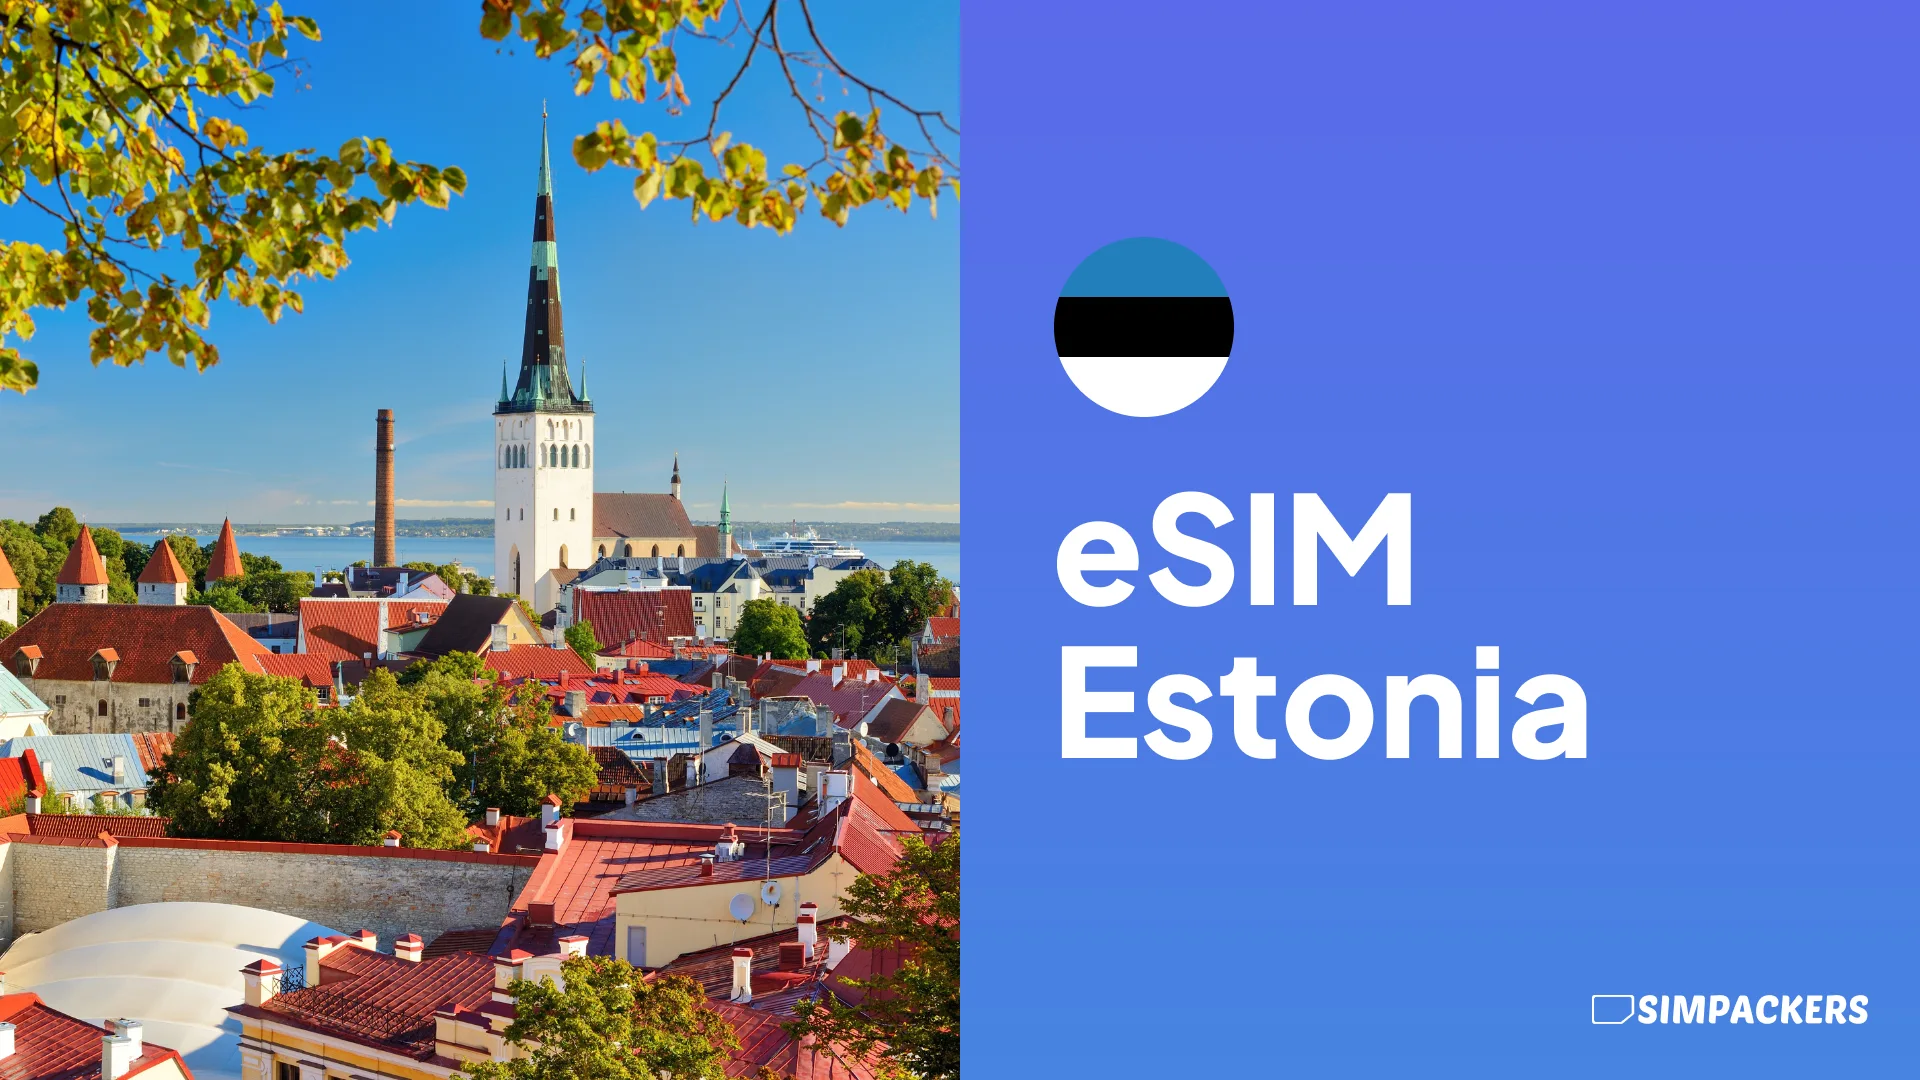 ES/FEATURED_IMAGES/esim-estonia.webp